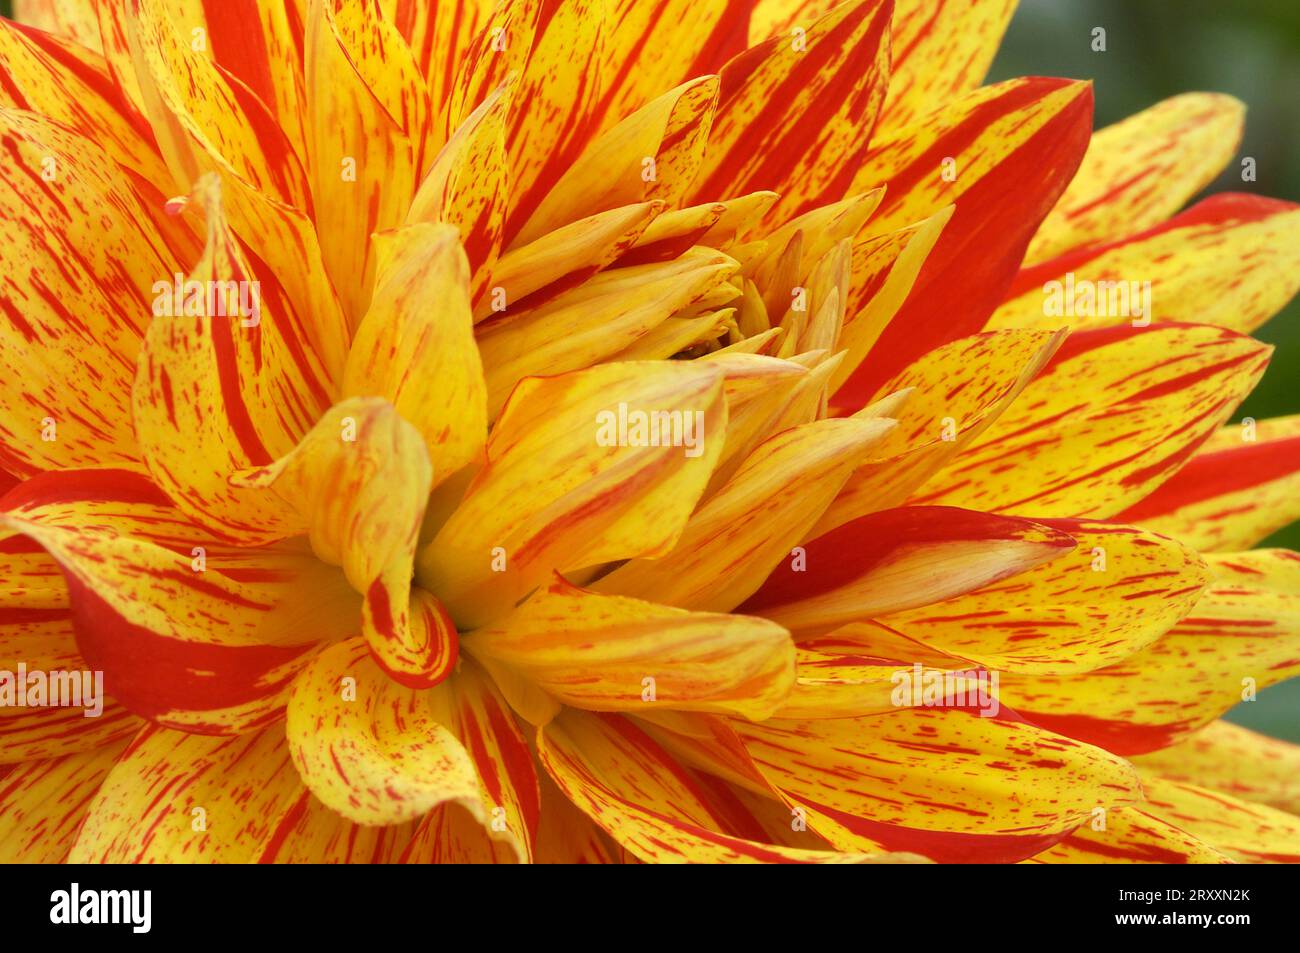 Semicactus Dahlia (Dahlia x cultorum) Stock Photo